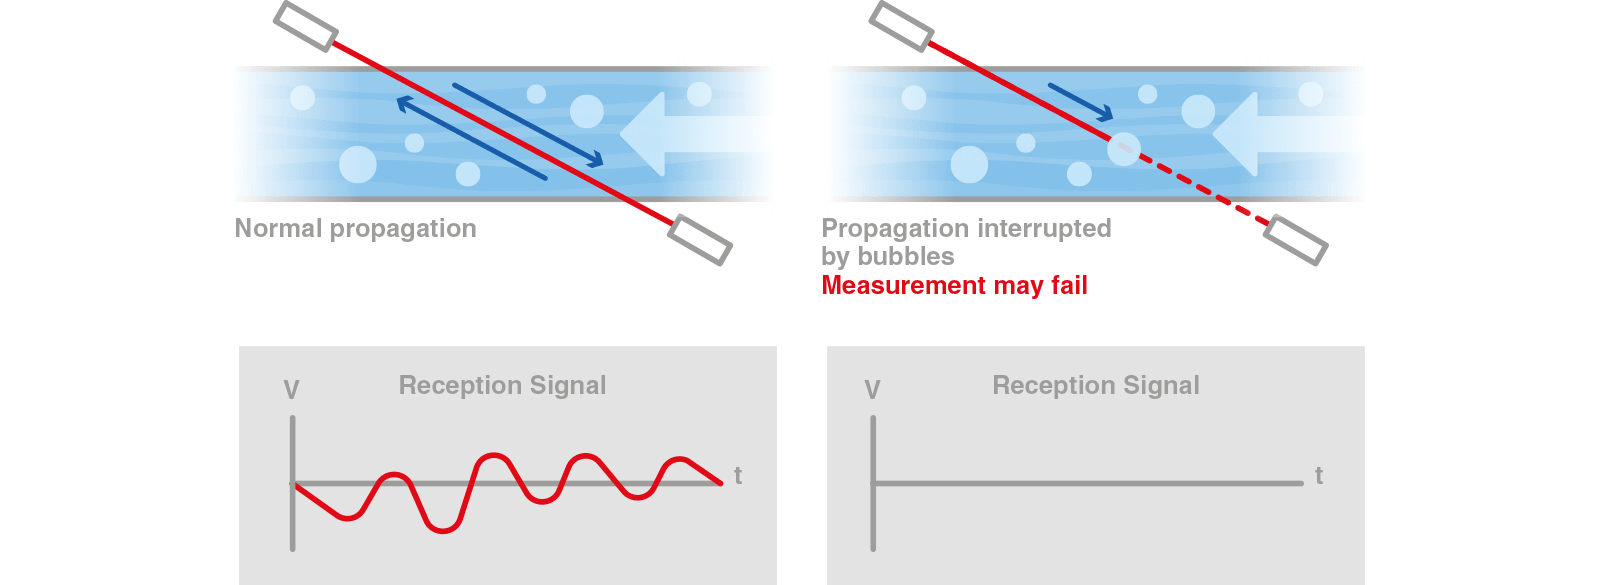 diagrama de tecnología avanzada de procesamiento digital de señales